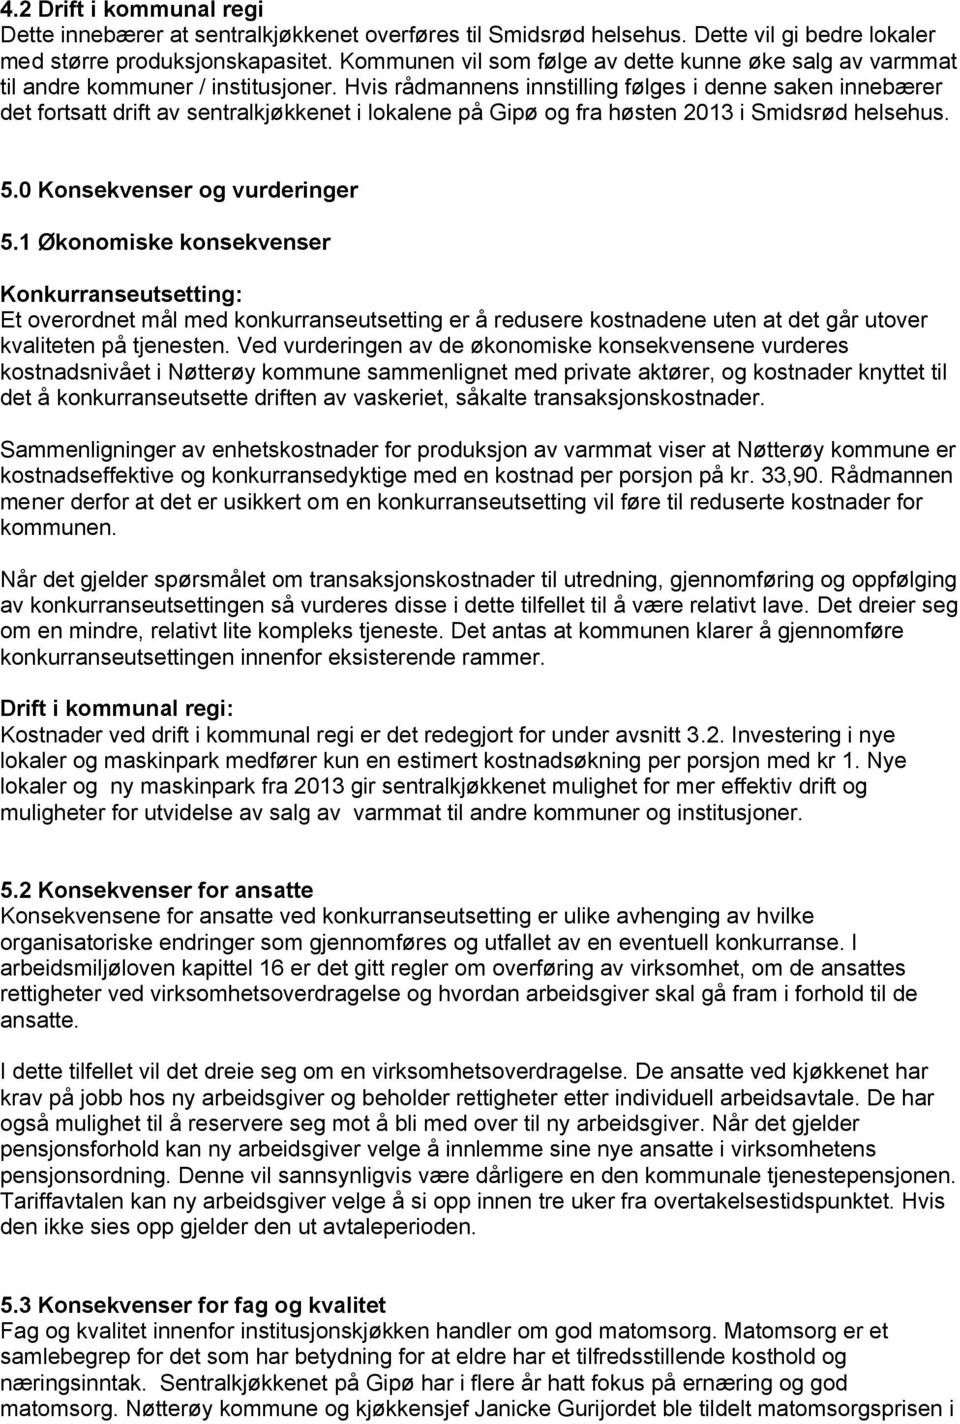 Hvis rådmannens innstilling følges i denne saken innebærer det fortsatt drift av sentralkjøkkenet i lokalene på Gipø og fra høsten 2013 i Smidsrød helsehus. 5.0 Konsekvenser og vurderinger 5.